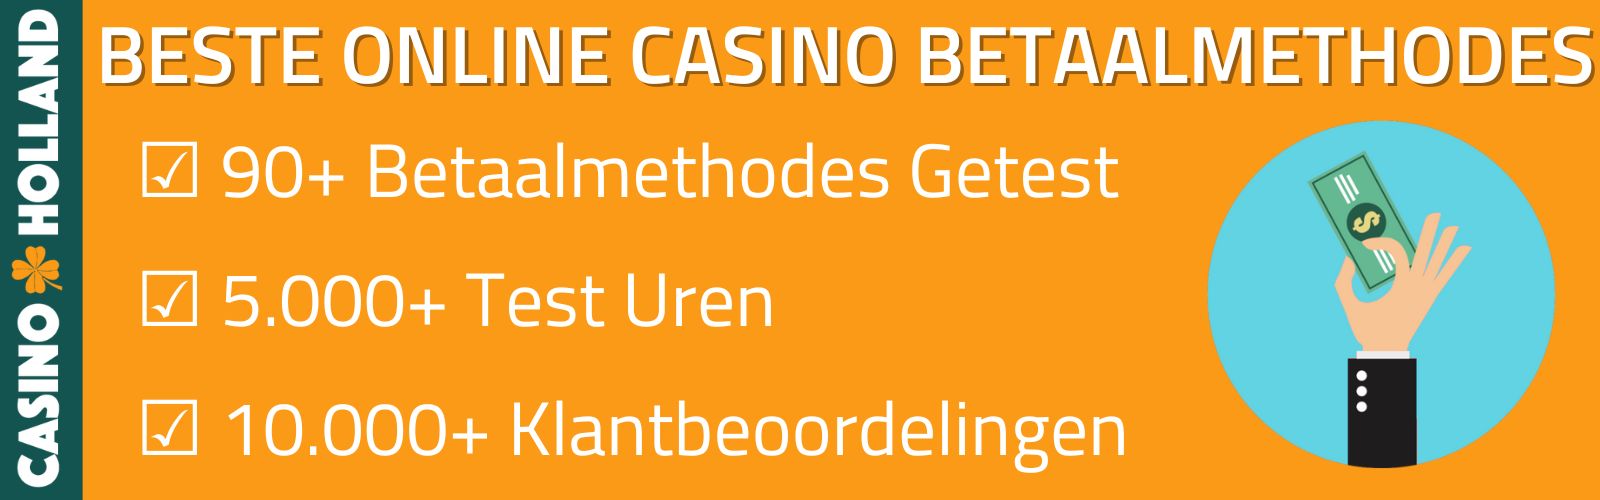 Online Casino Betaalmethodes